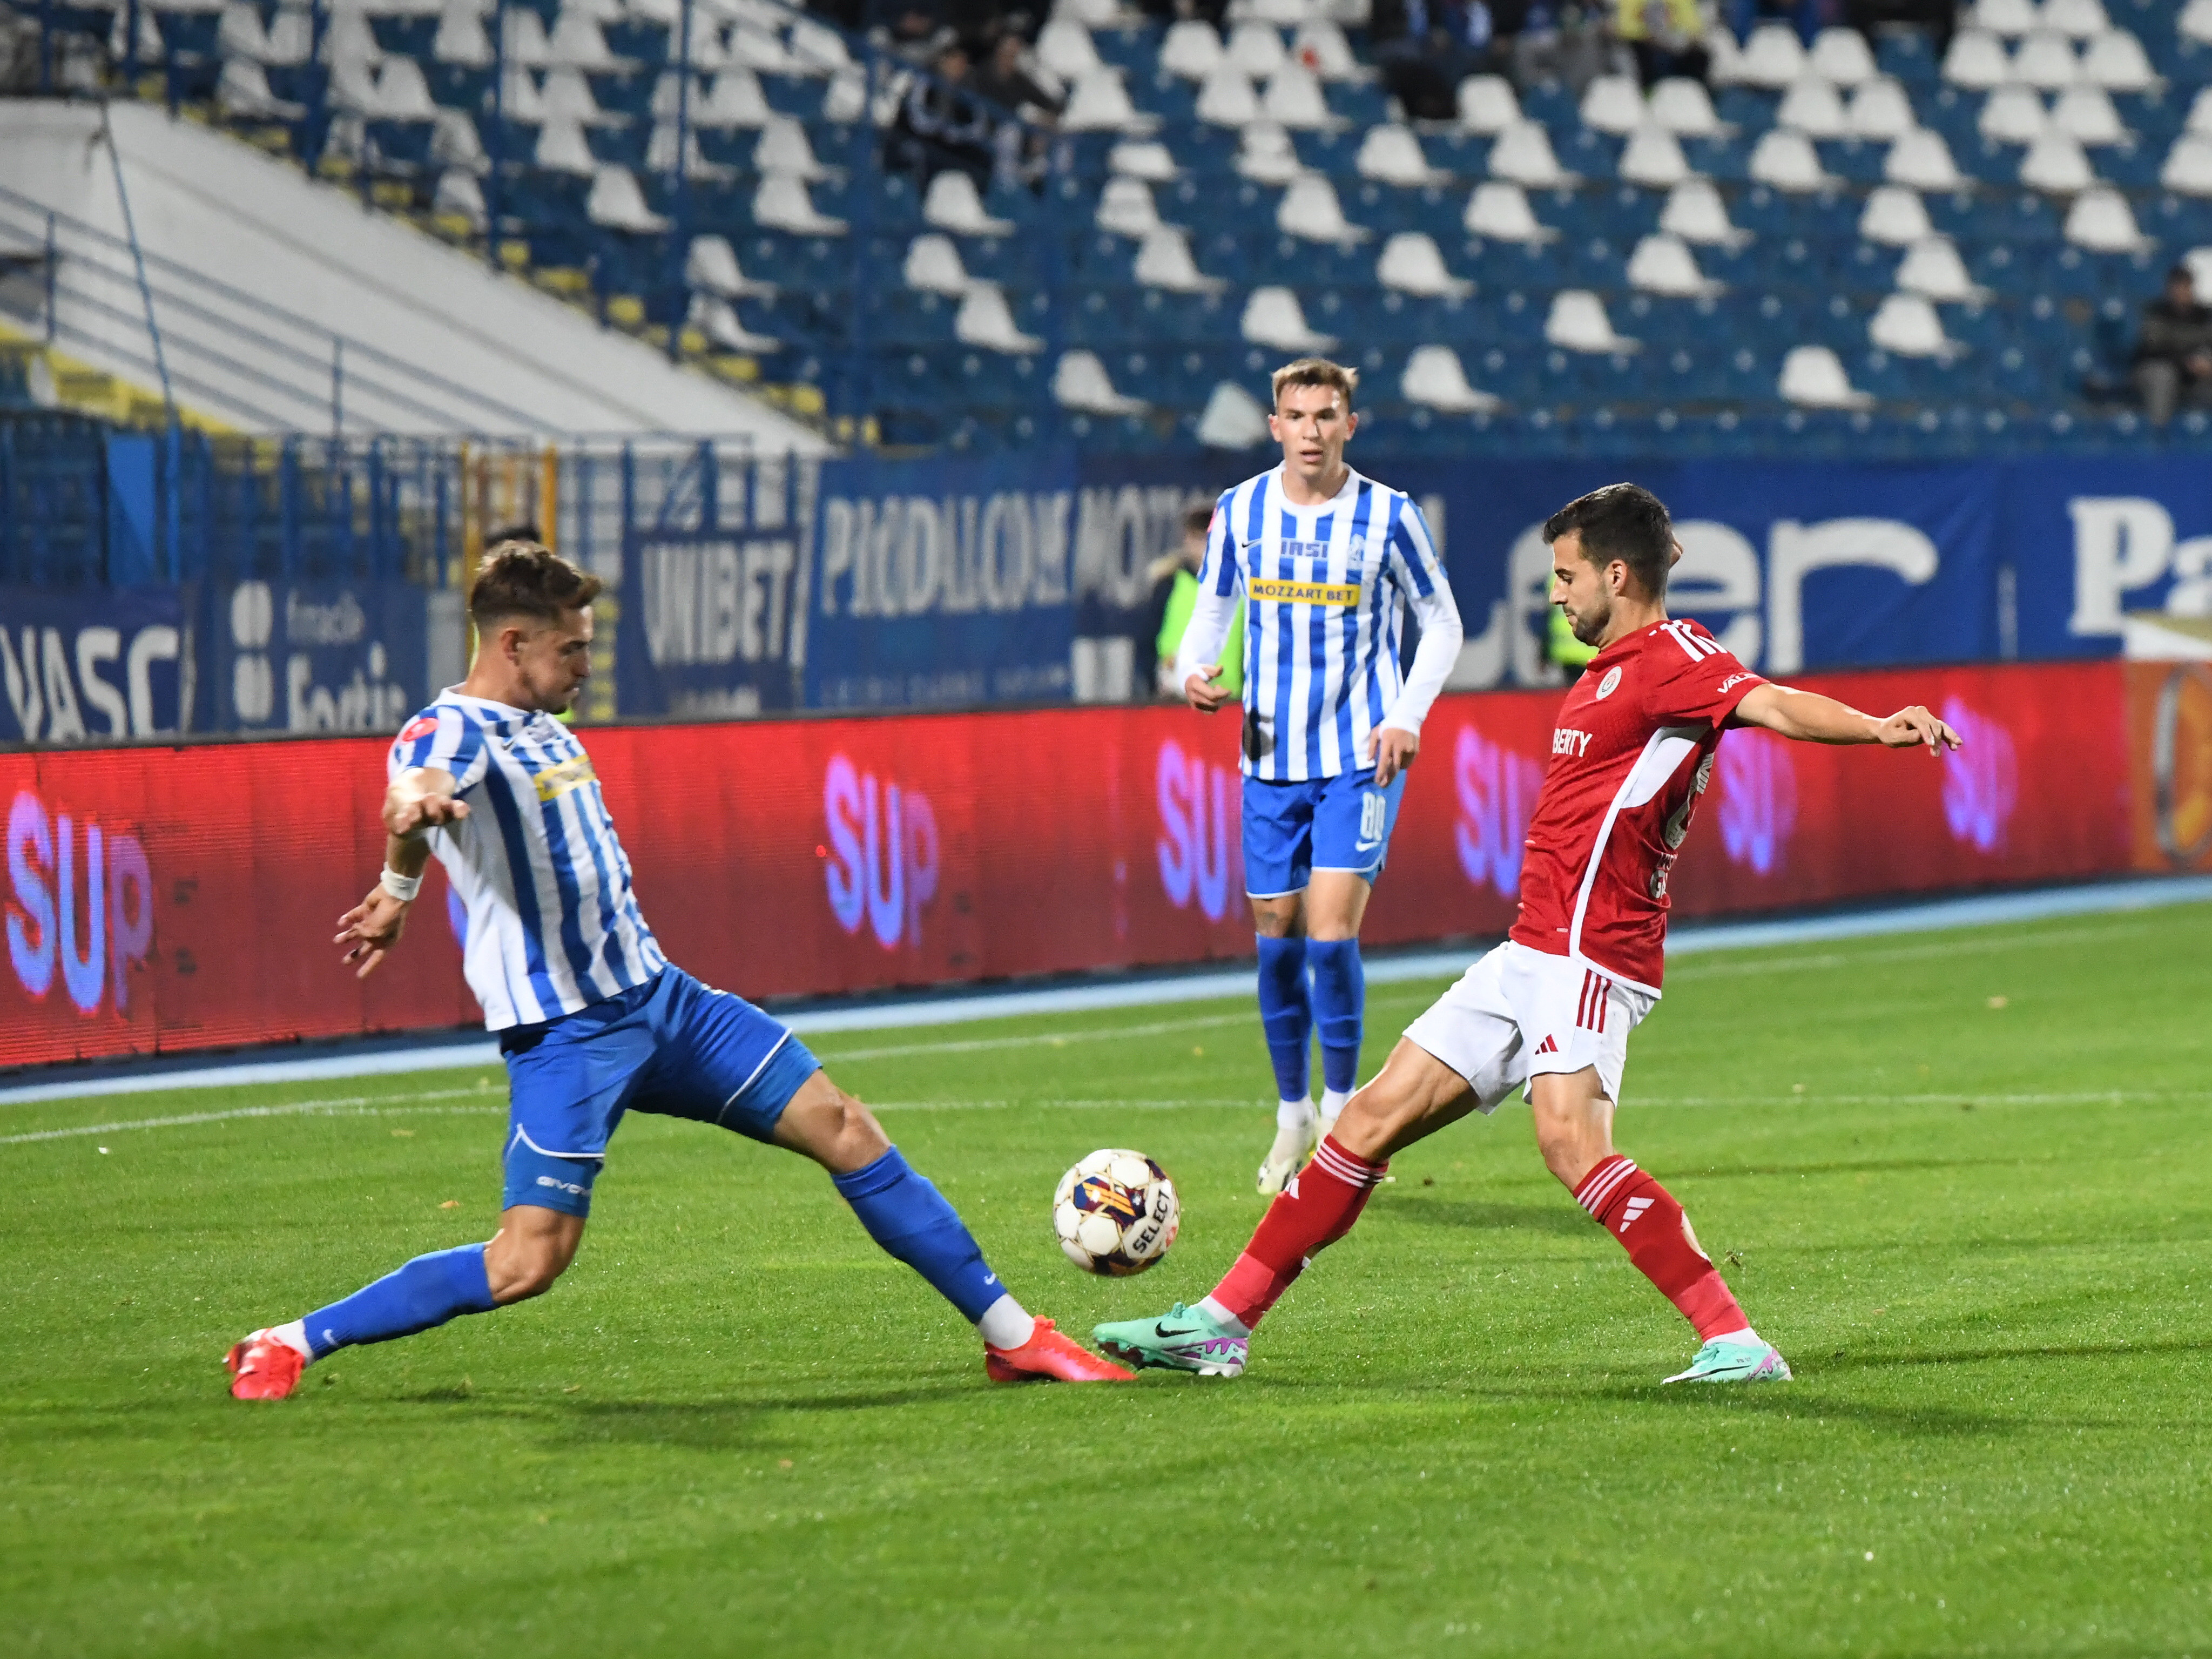 Oțelul - Poli Iași 1-0, ACUM, Digi Sport 1. Gazdele conduc, datorită reușitei semnate de Maciel